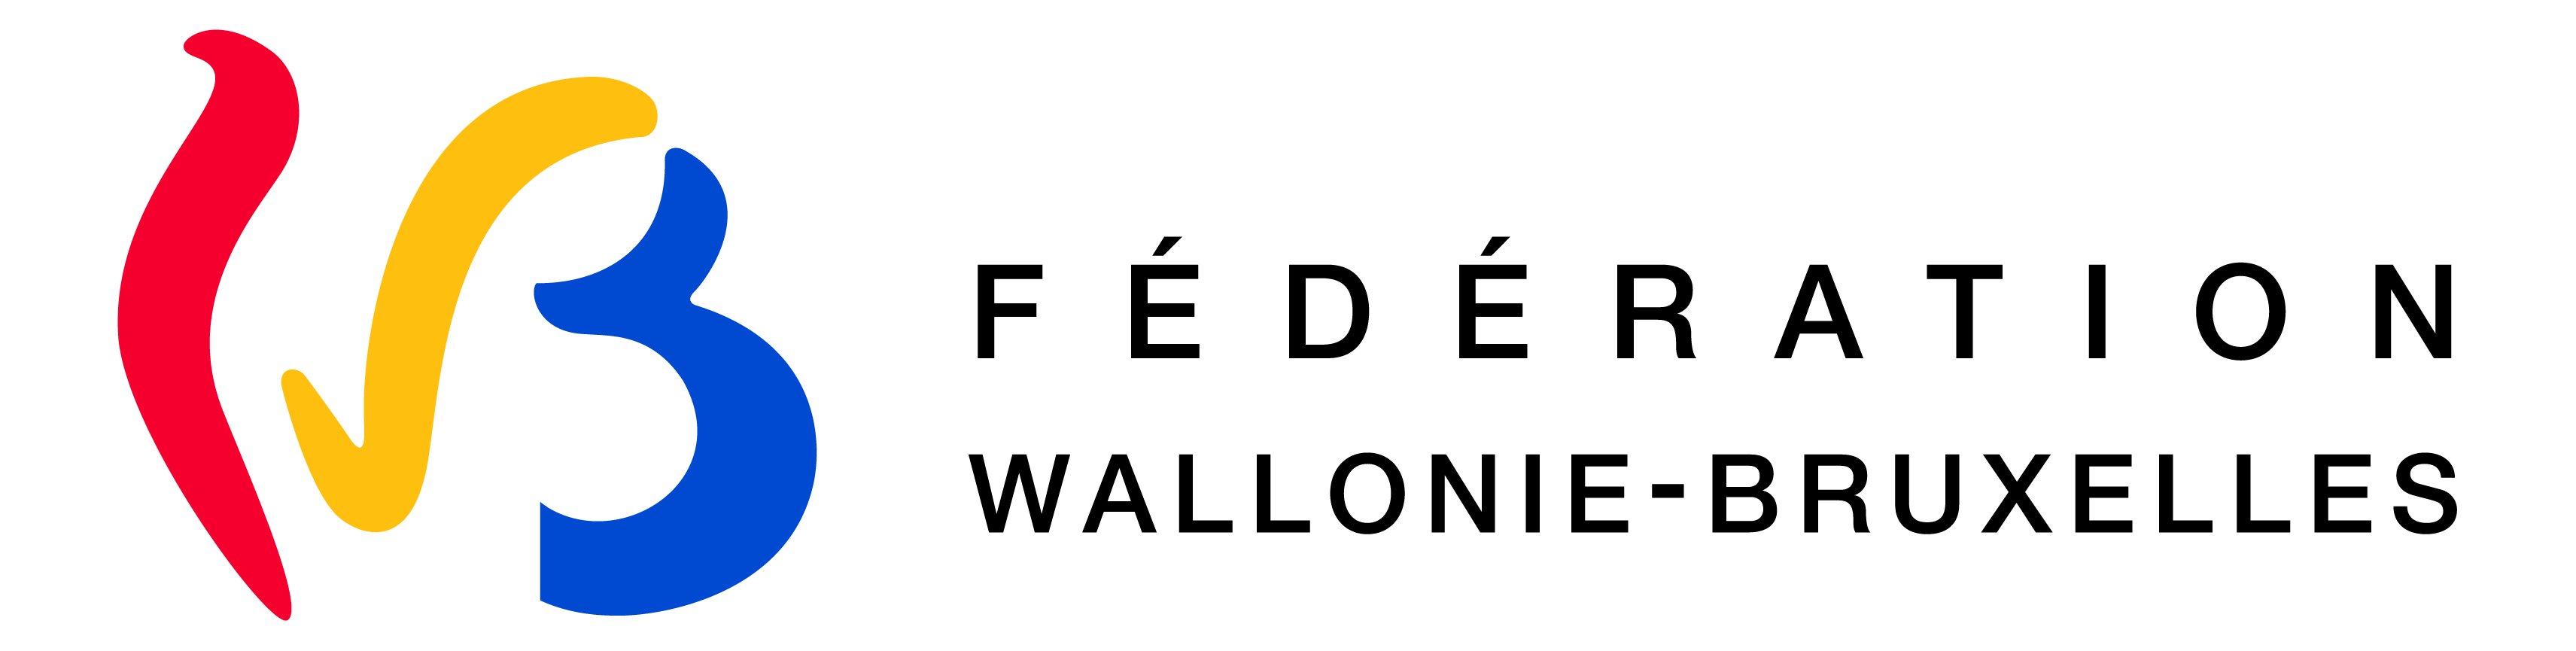 Fédération Wallonie-Bruxelles标志